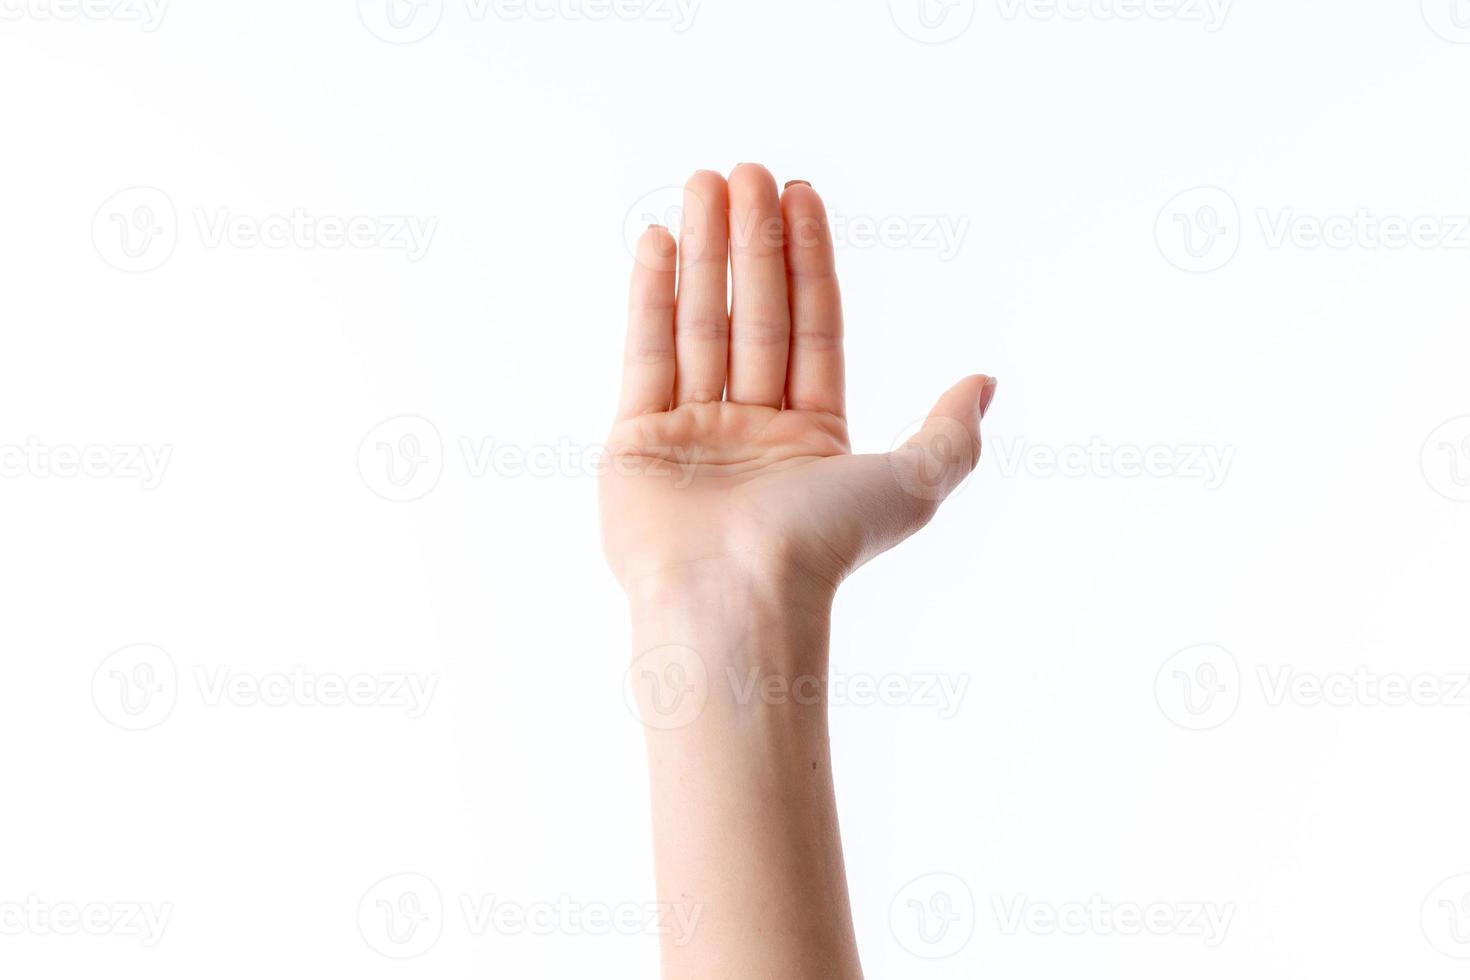 mano femenina con los dedos levantados y la palma hacia adelante desplegada foto